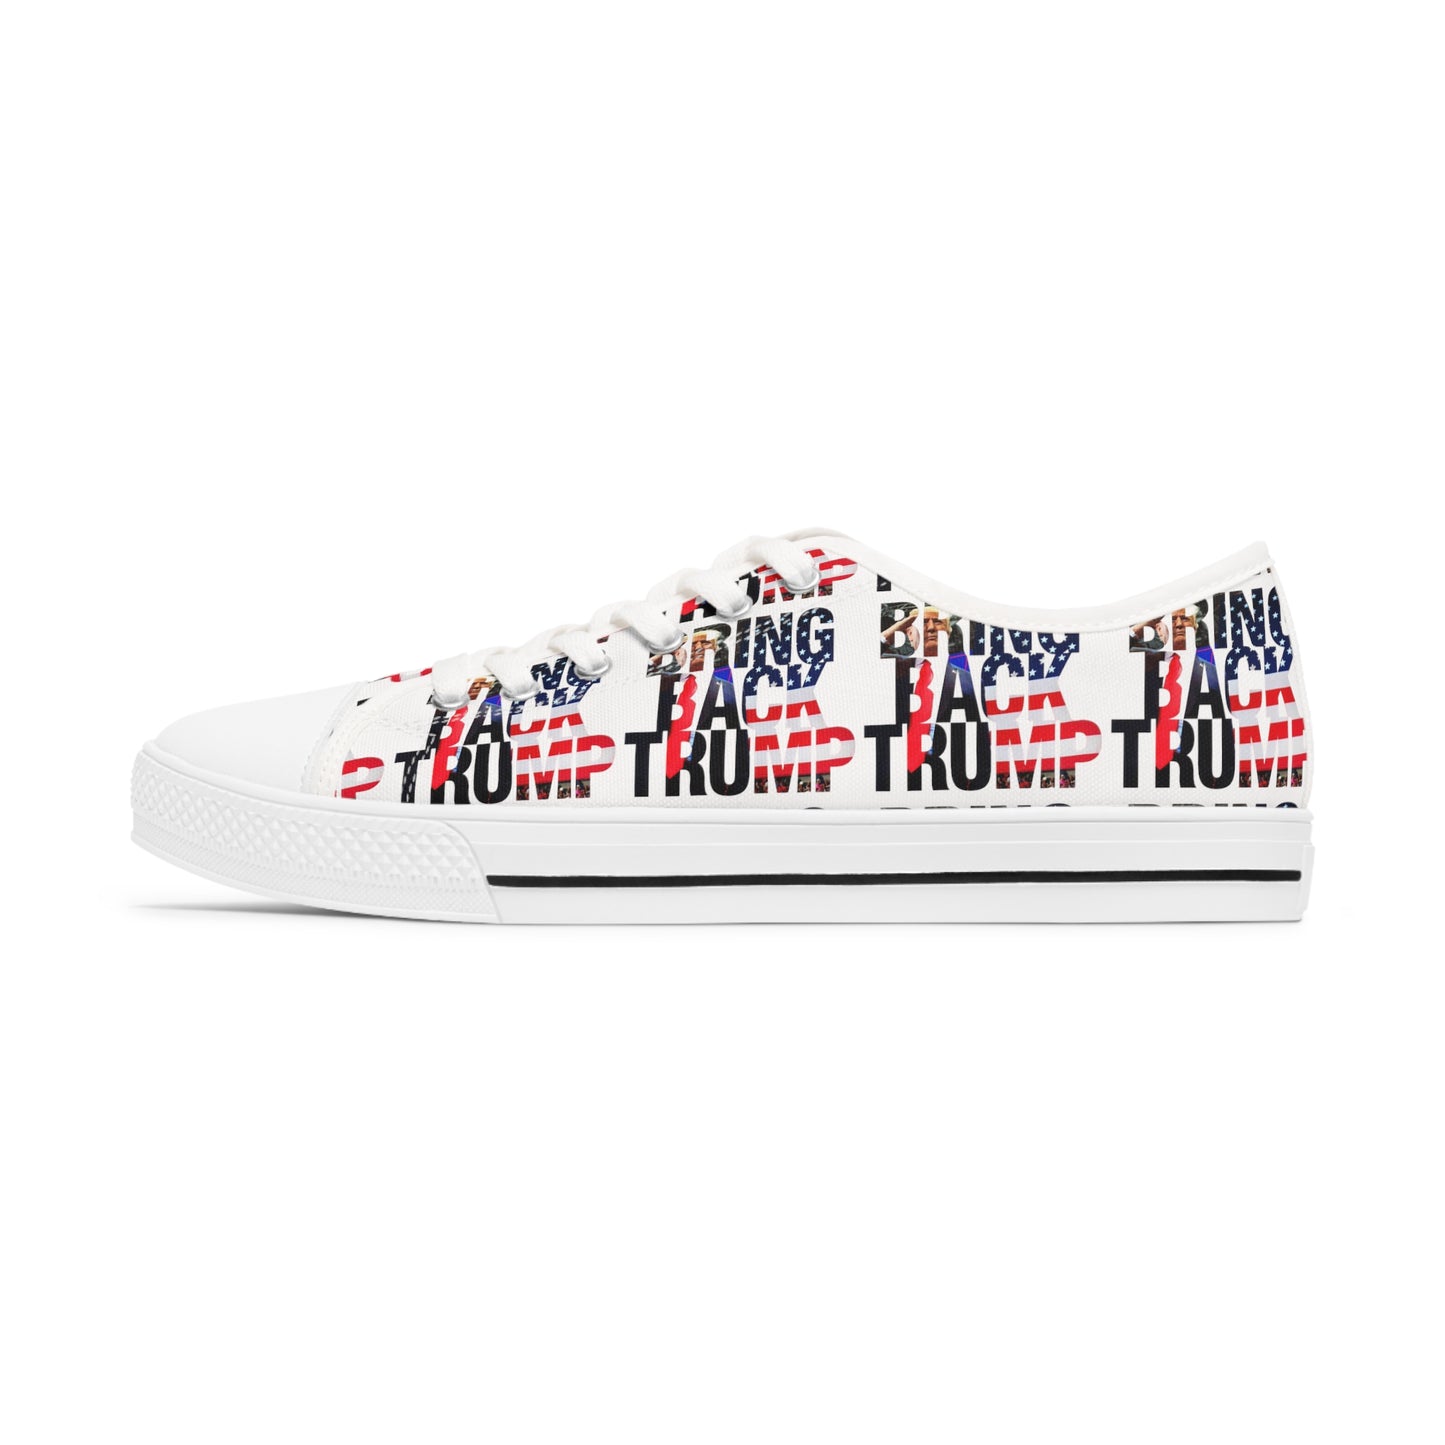 Bring Back Trump Weiße MAGA Low-Top-Sneaker für Damen mit Allover-Print